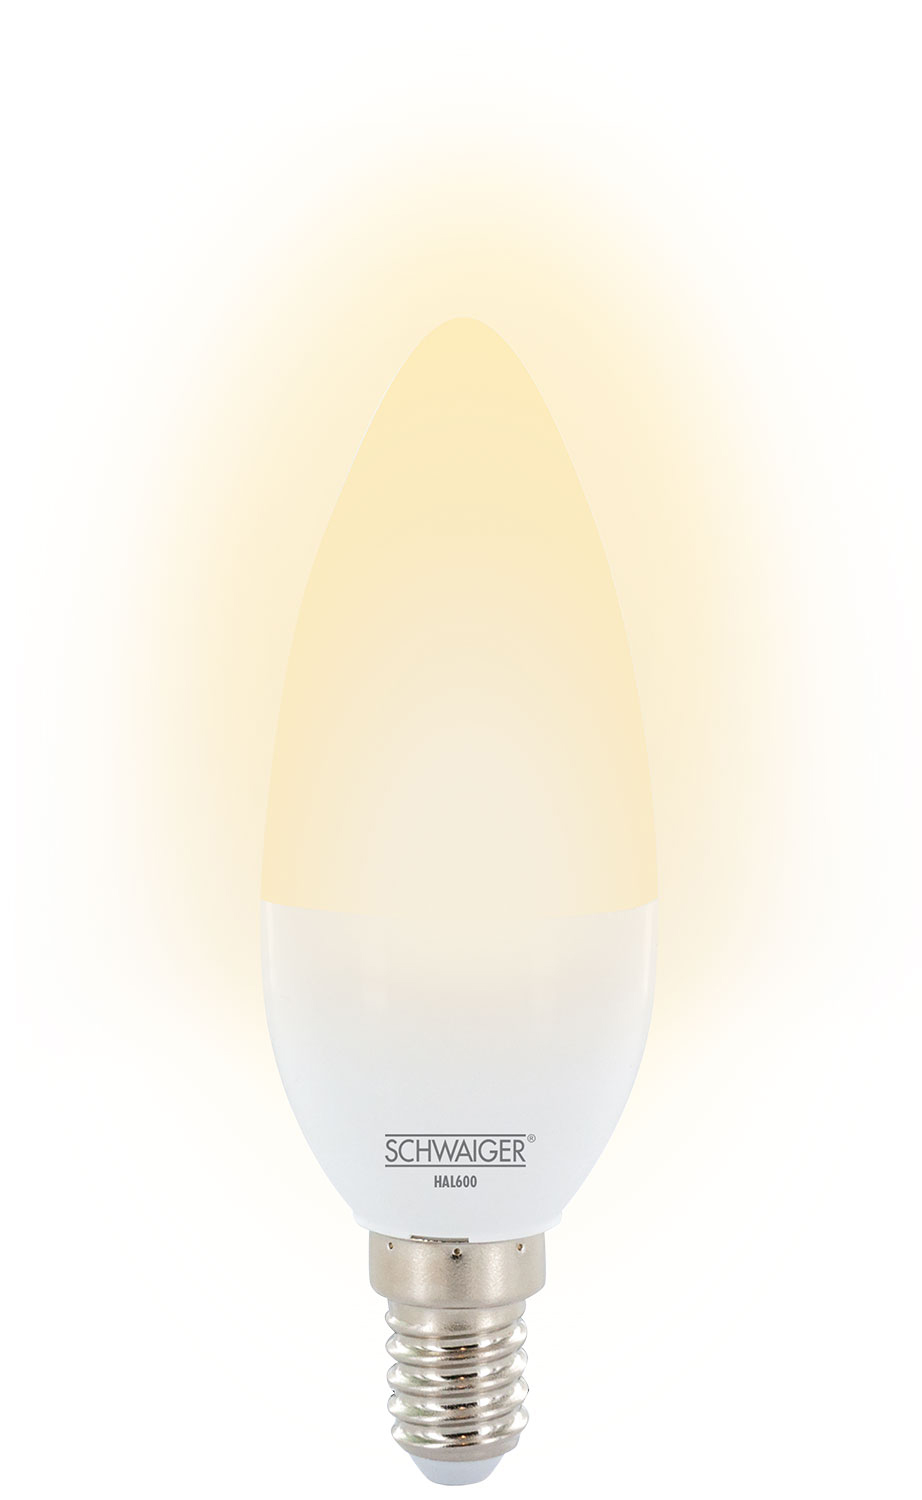 dimmbares (E14) Wohnlicht als Warmweiß -HAL600- SCHWAIGER Leuchtmittel LED